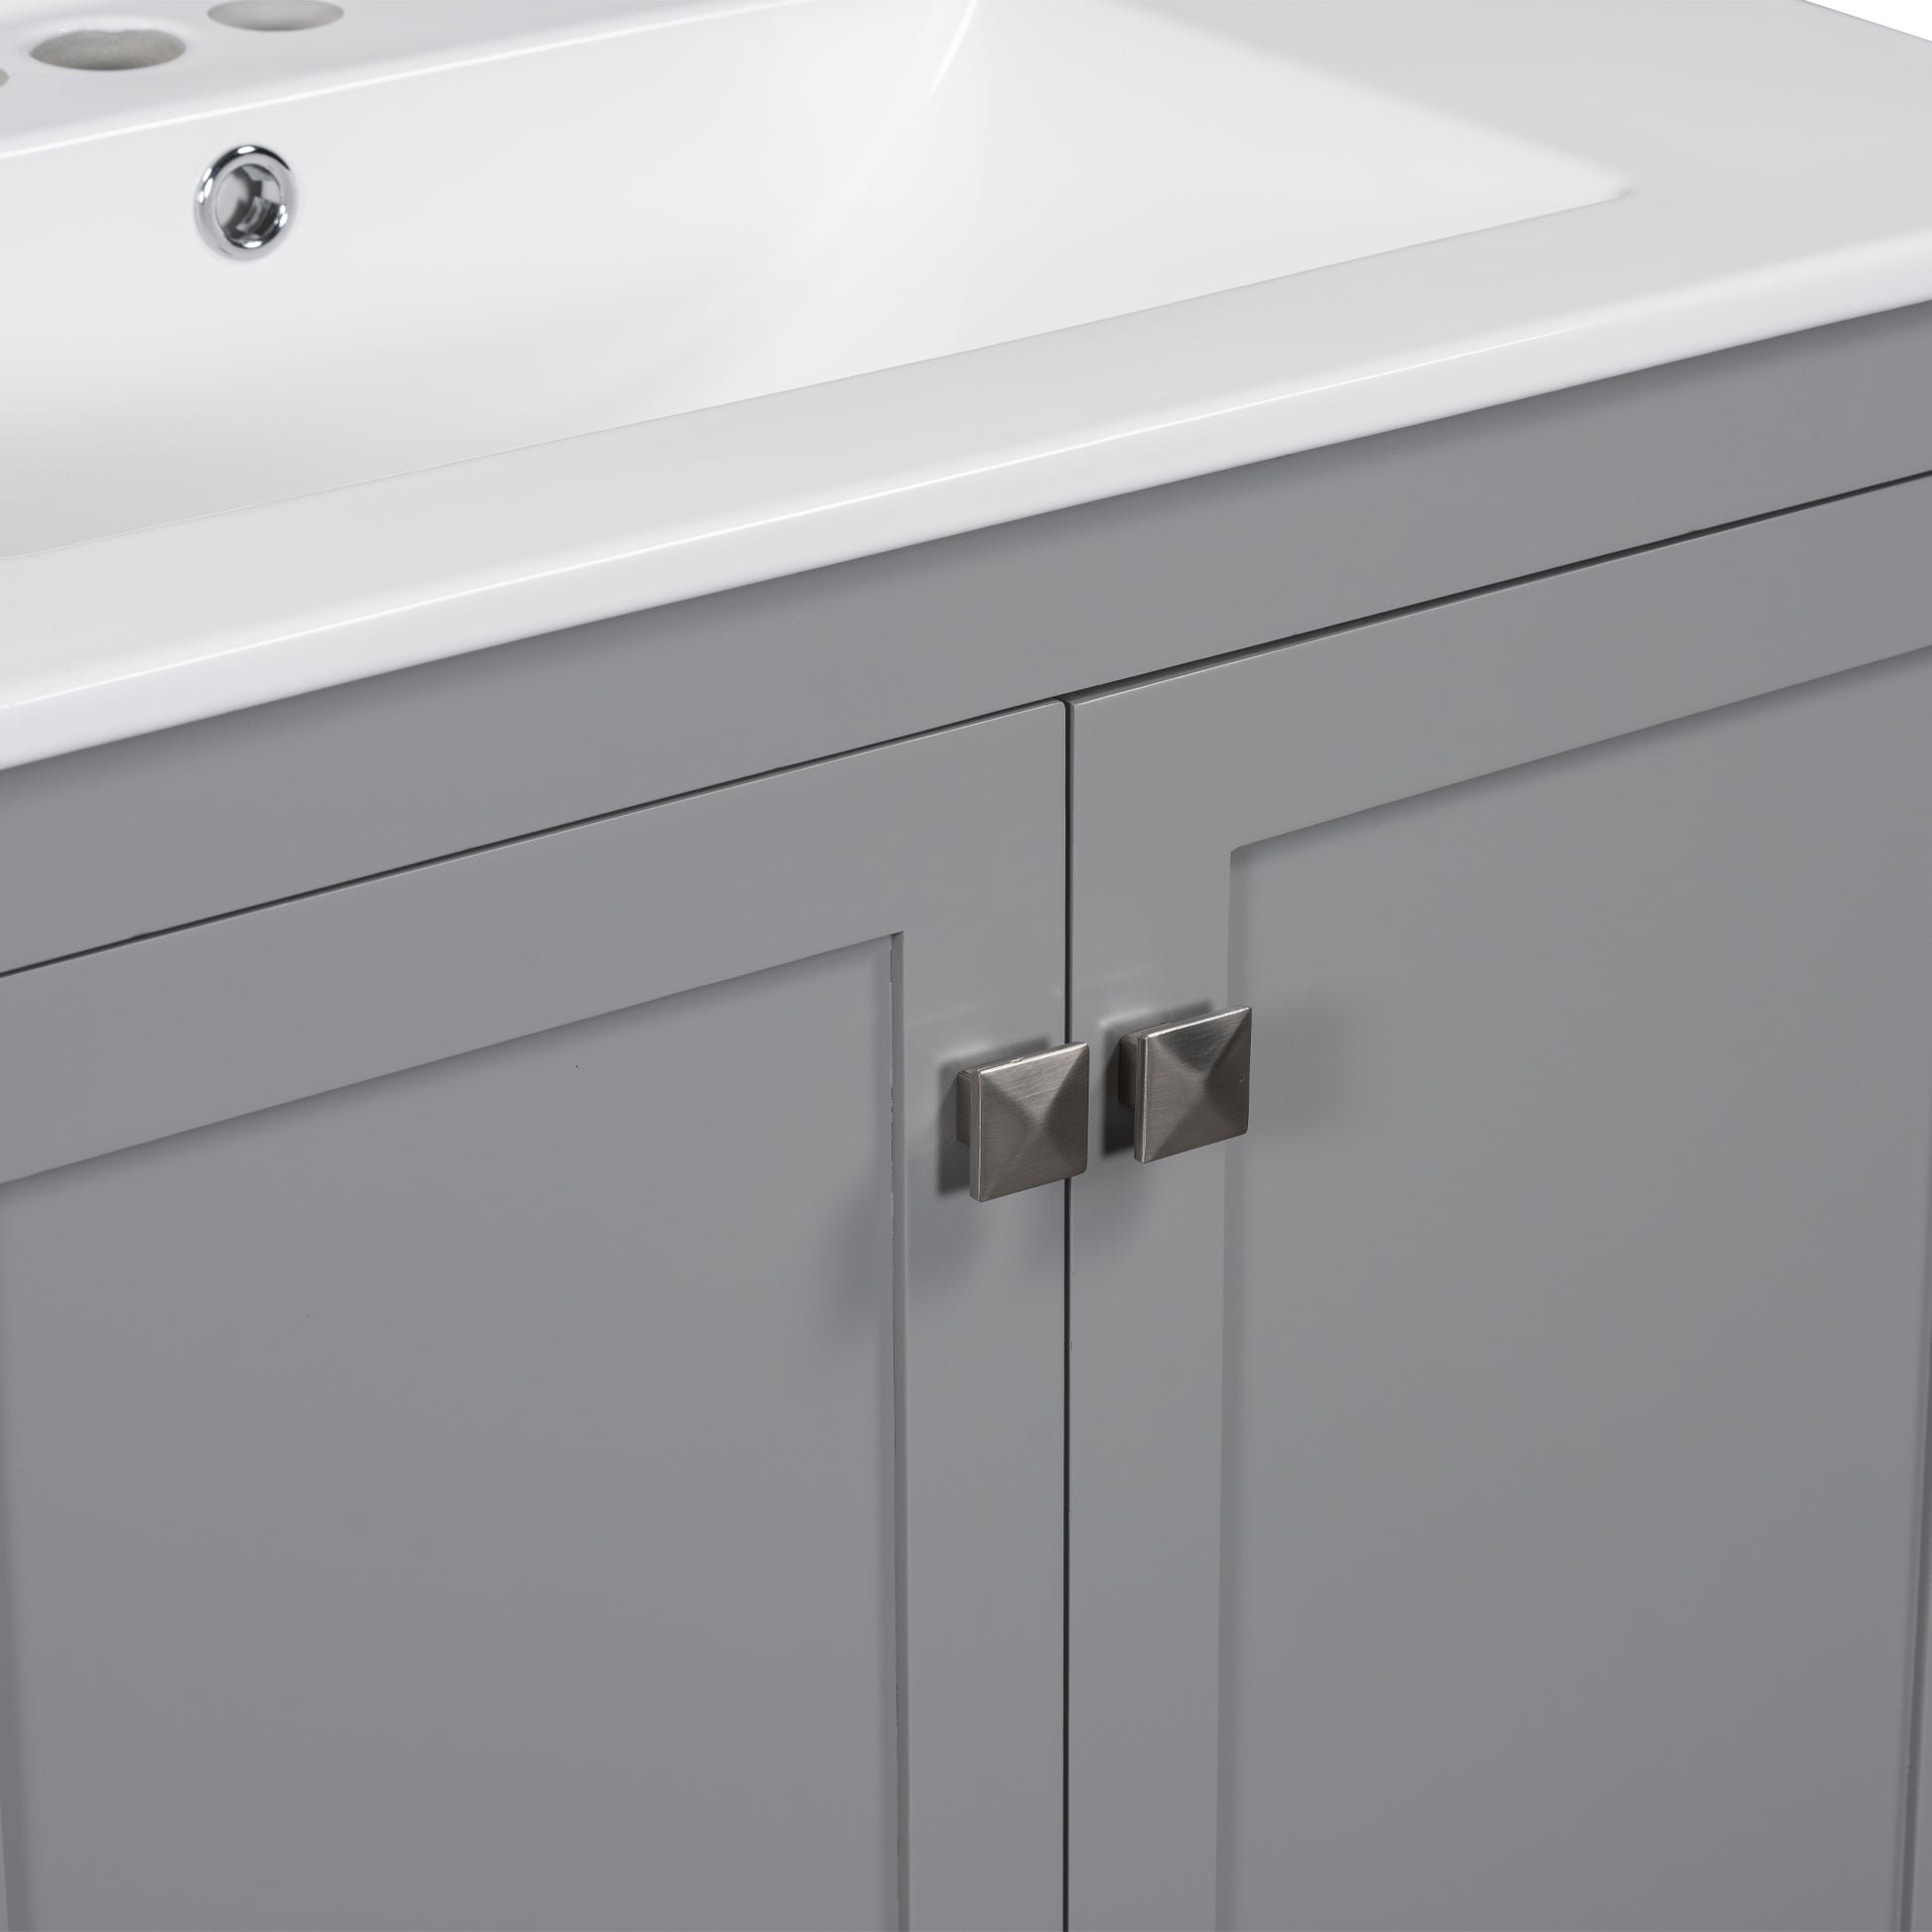 30" Gray Bathroom Vanity With Single Sink, Combo